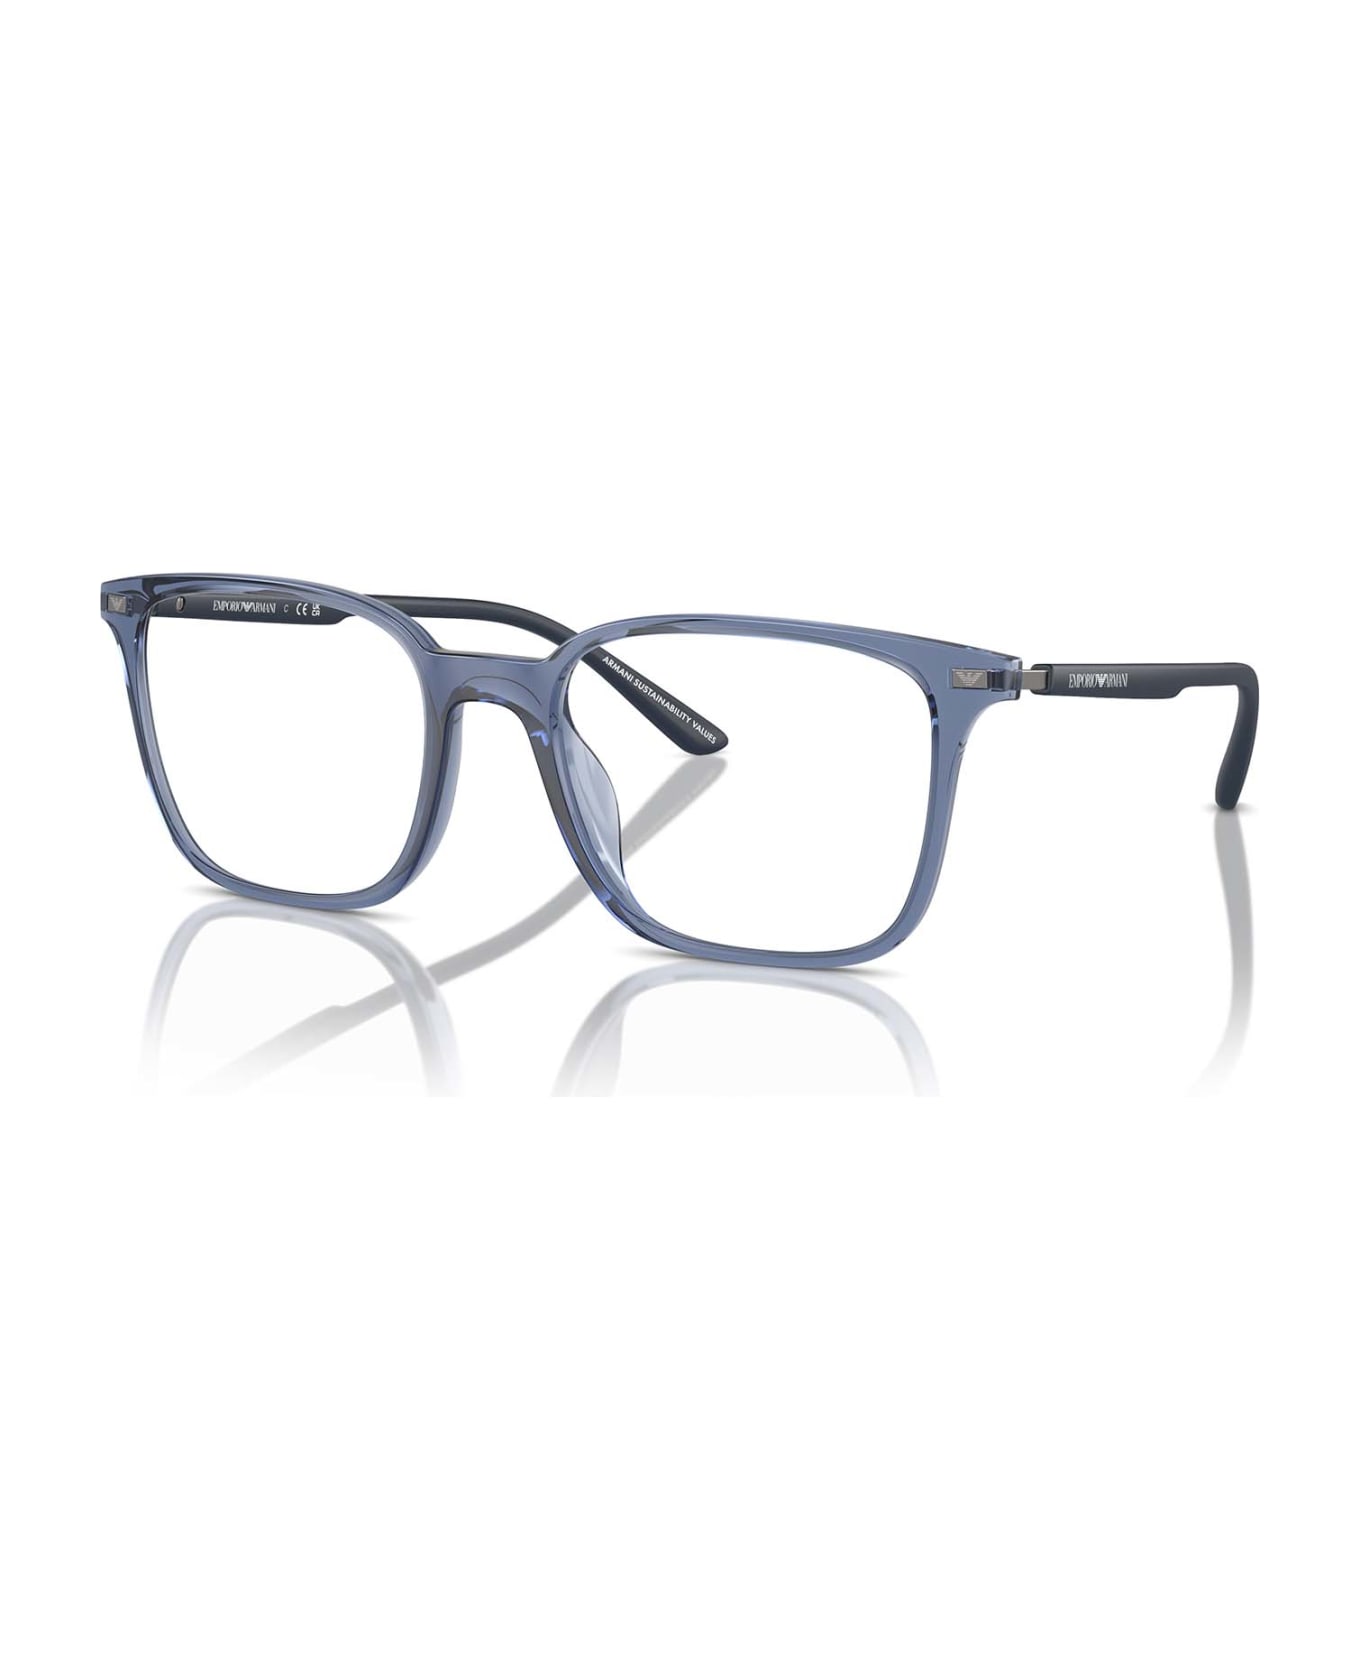 Emporio Armani Ea3242u Shiny Transparent Blue Glasses - Shiny Transparent Blue アイウェア